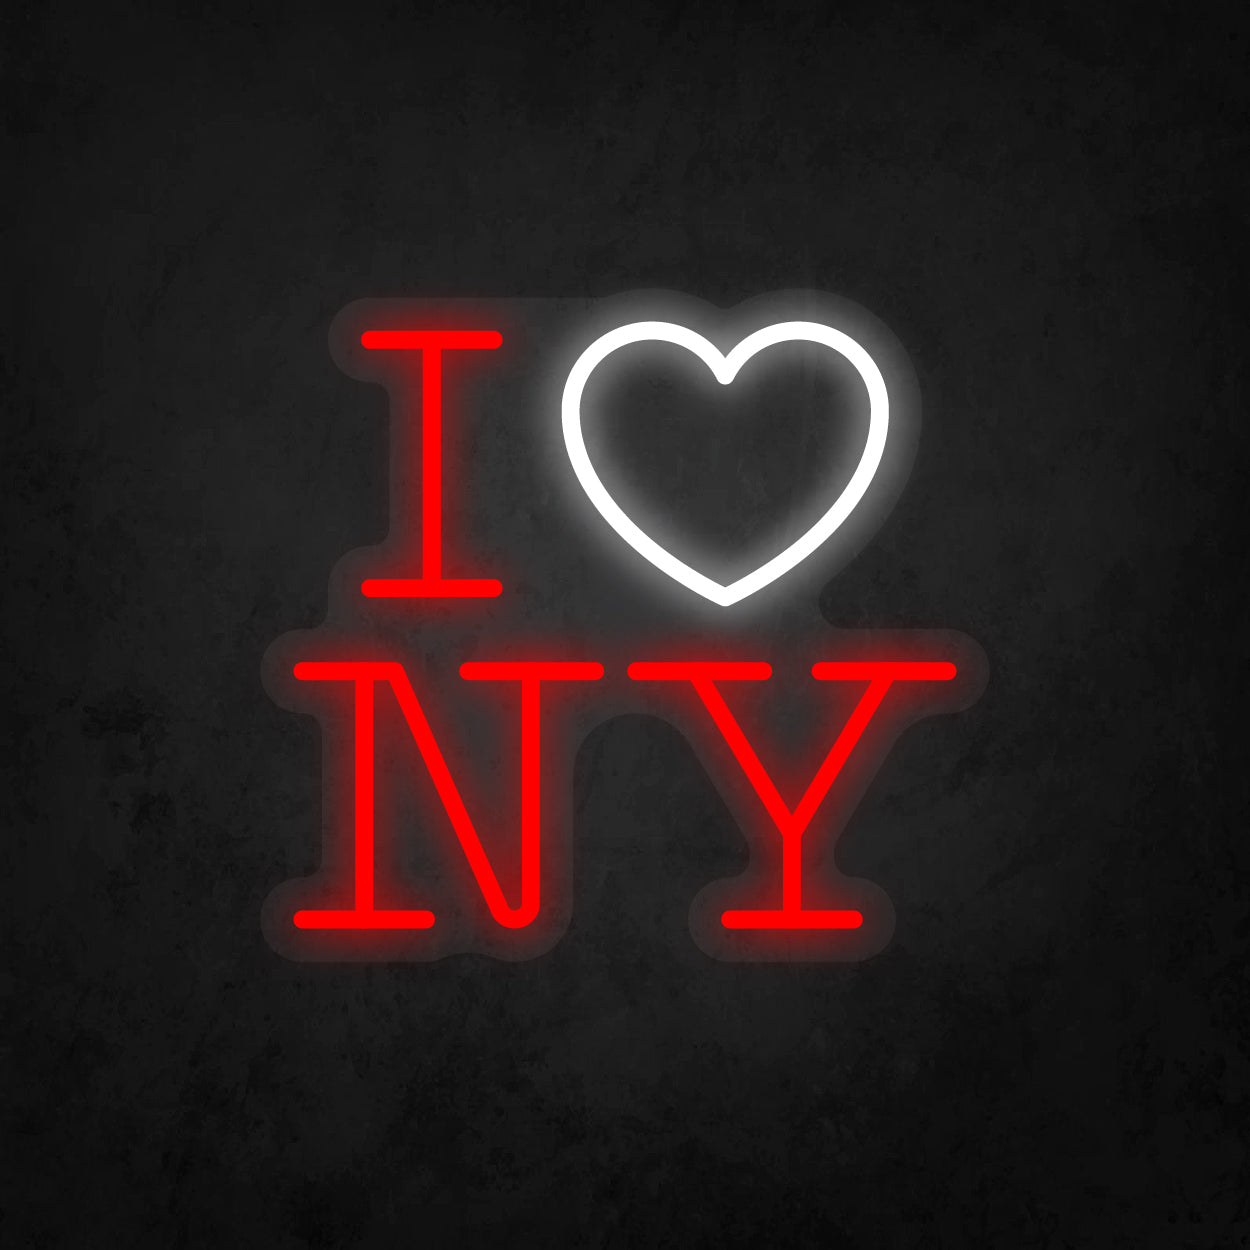 LED Neon Sign - I Love New York